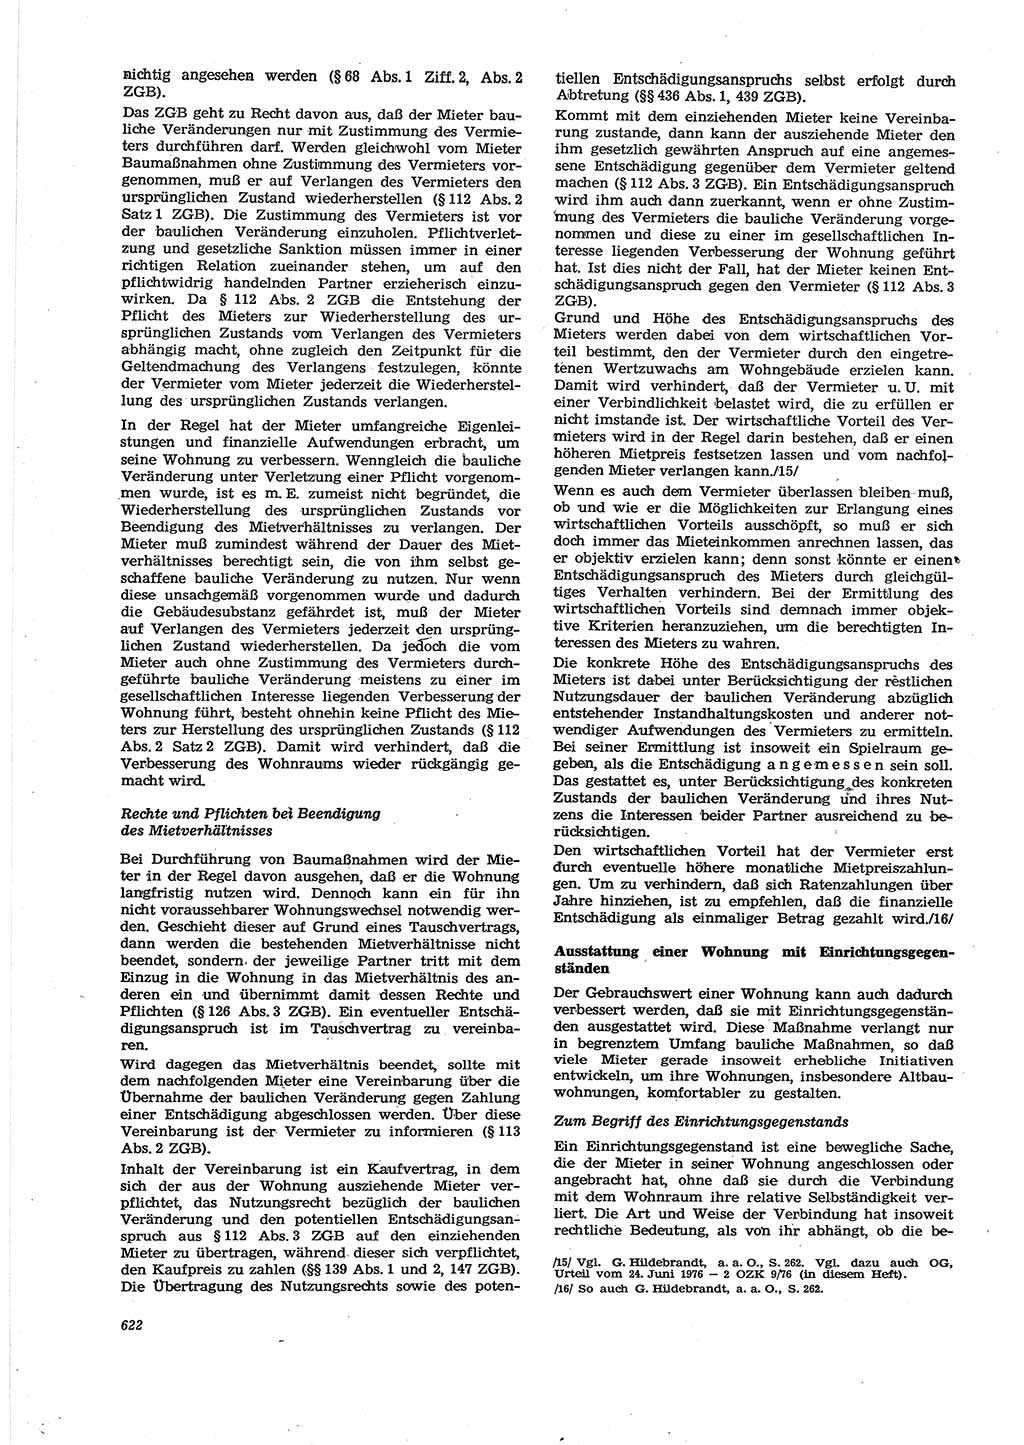 Neue Justiz (NJ), Zeitschrift für Recht und Rechtswissenschaft [Deutsche Demokratische Republik (DDR)], 30. Jahrgang 1976, Seite 622 (NJ DDR 1976, S. 622)